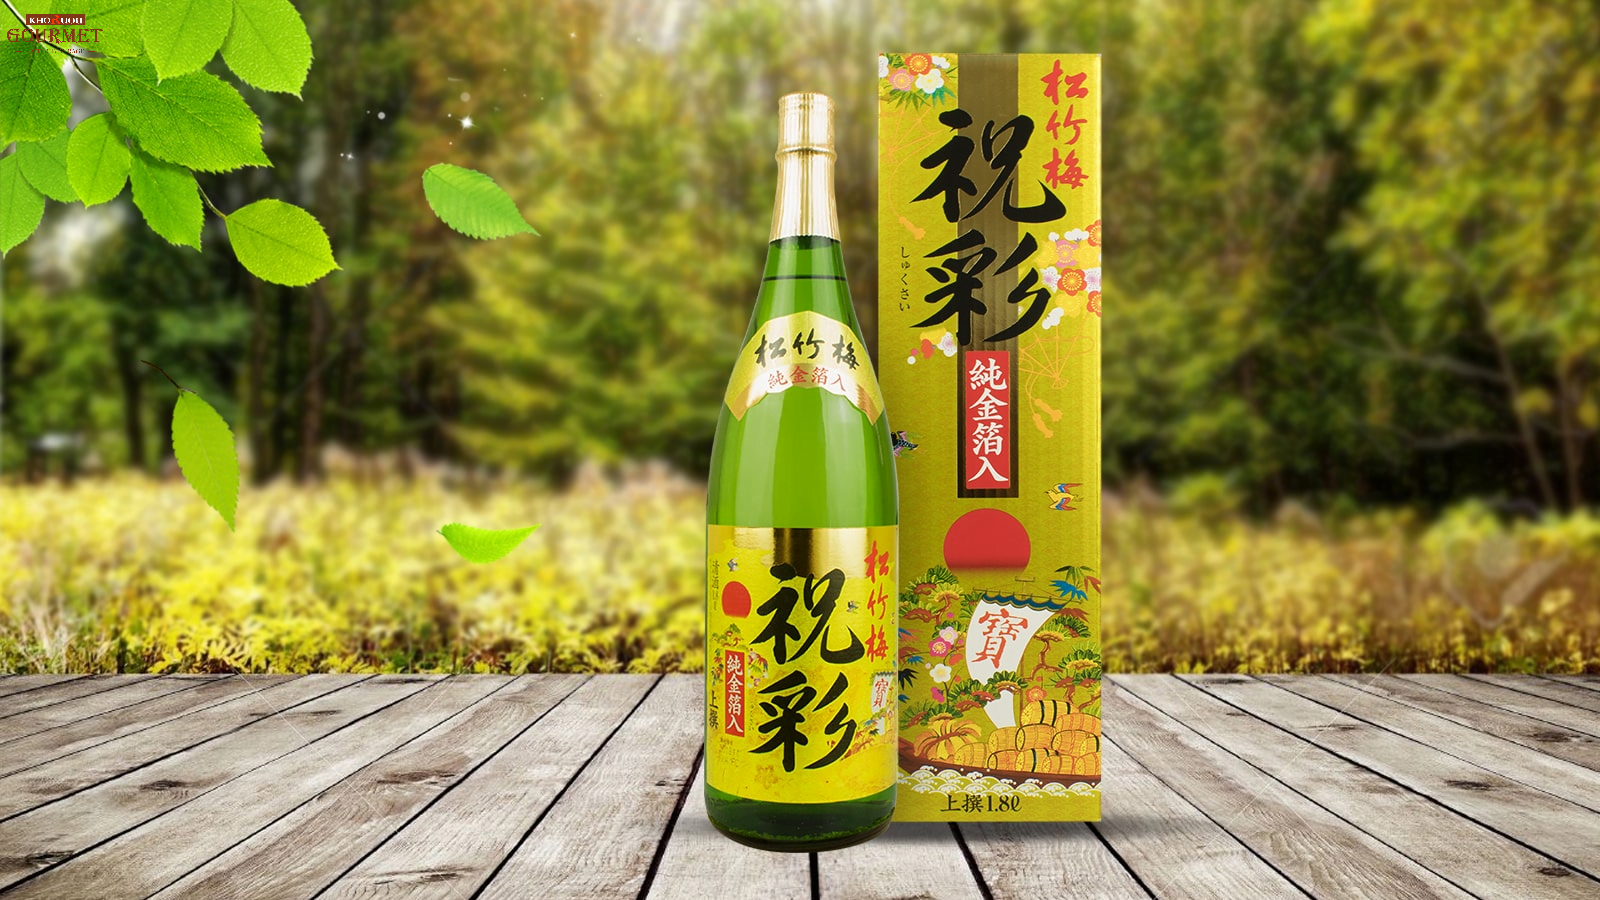 Mùa đông ở Nhật lạnh nên uống rượu sake nóng là cách uống phổ biến và được ưa chuộng nhất ở vùng này